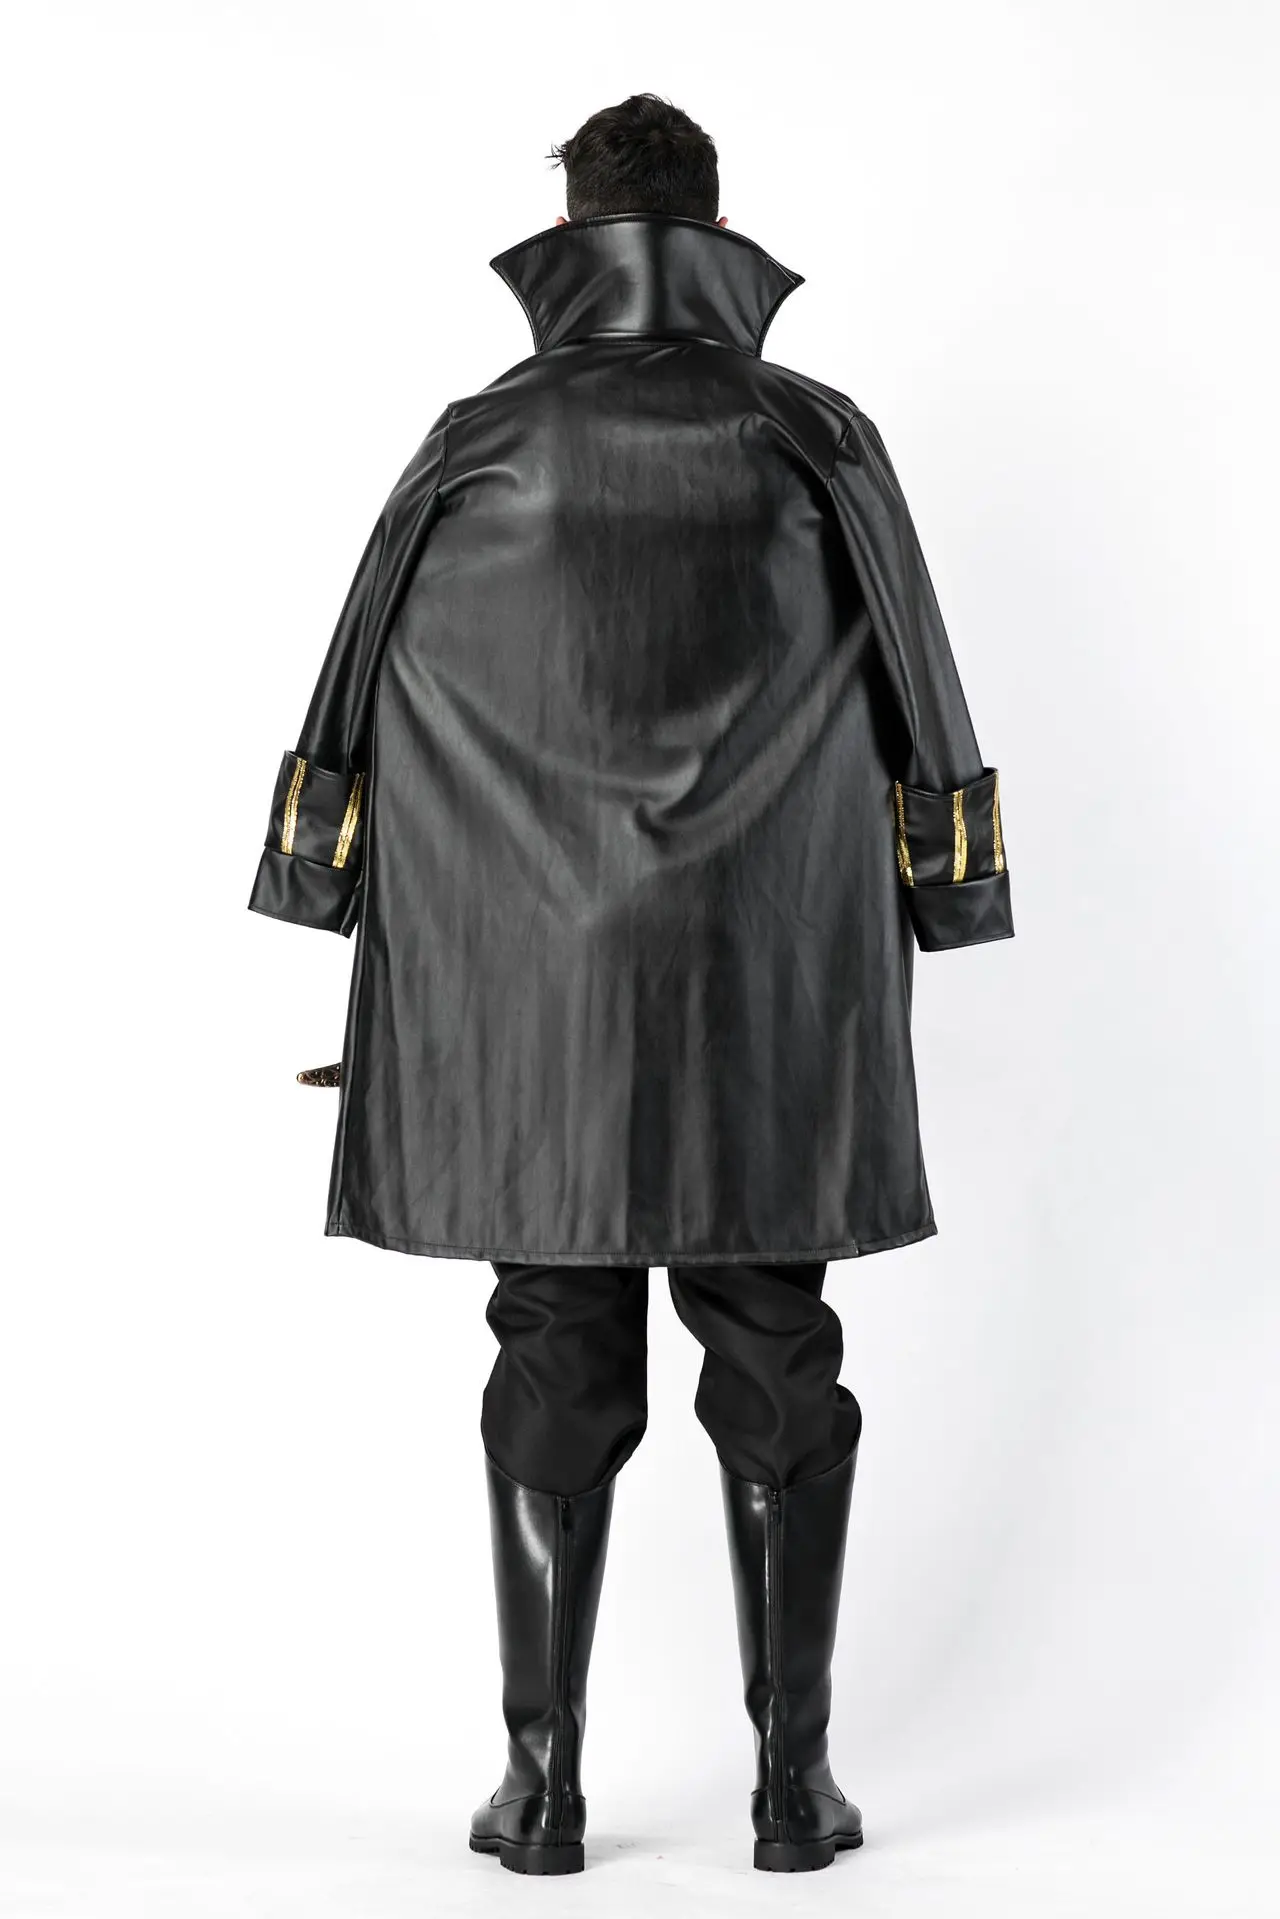 Маскарад на Хэллоуин винтажный королевский костюм вампира для взрослых мужчин благородный рыцарь пират косплей нарядное платье